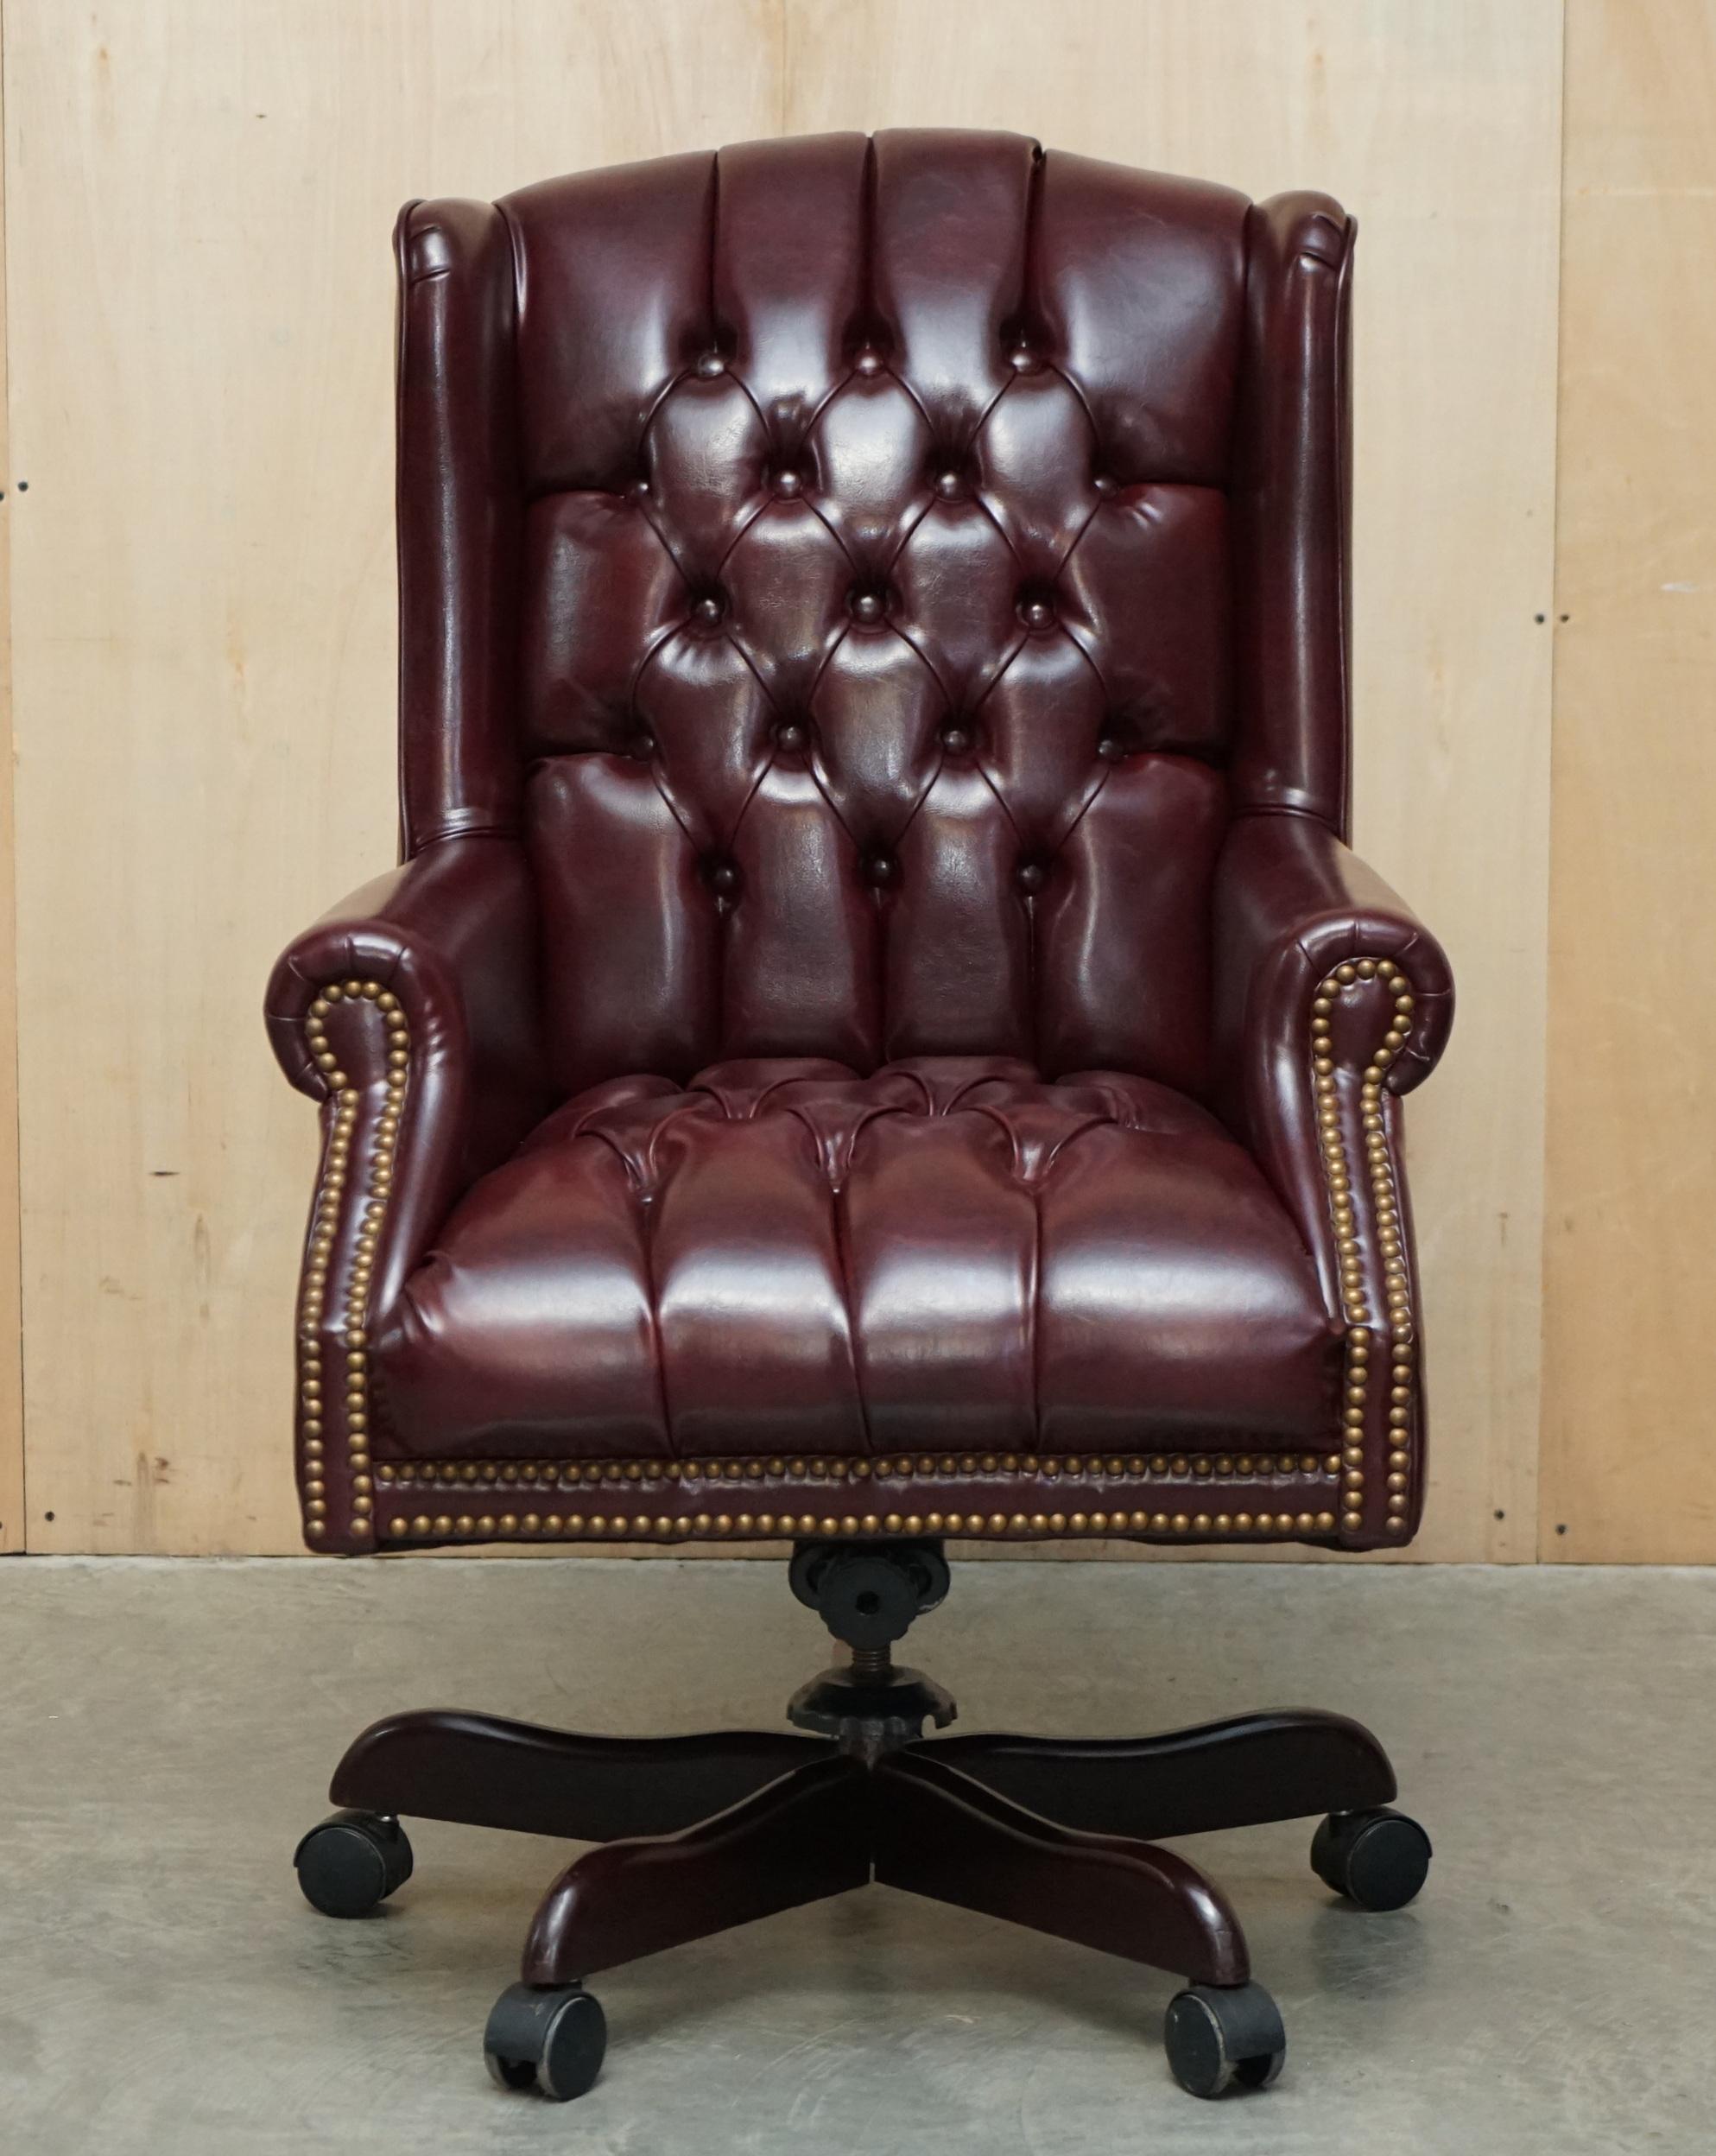 Nous sommes ravis de proposer à la vente ce très confortable grand fauteuil de bureau Chesterfield en cuir Oxblood, avec cuir et patine d'origine.

Il s'agit en effet d'un fauteuil de capitaine très confortable, comme votre fauteuil de lecture